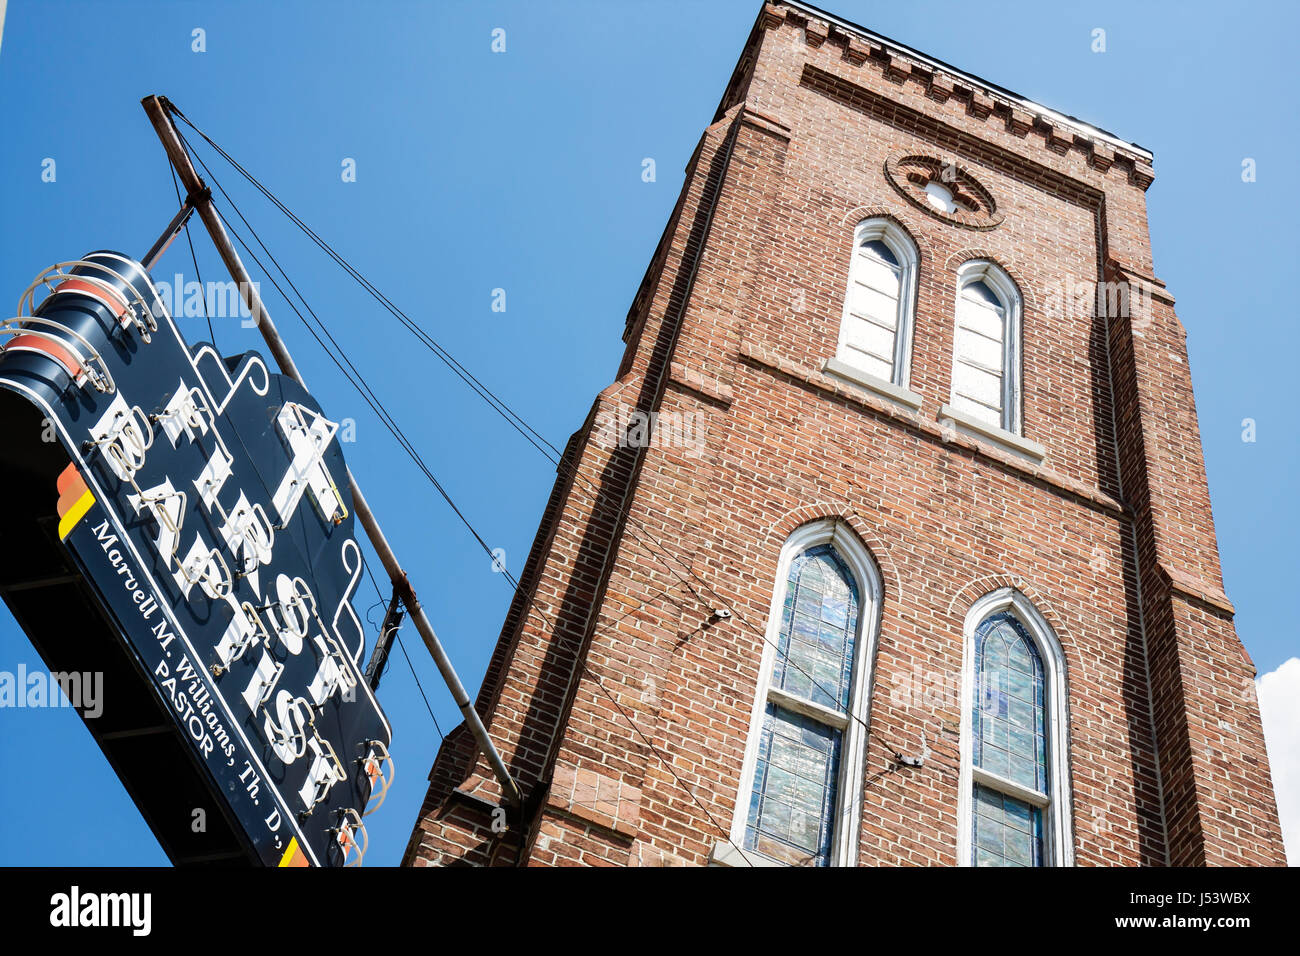 Little Rock Arkansas,First Baptist Church,Religion,Süd,Turm,Schild,Buntglasfenster,spätgotische Wiedergeburt,erbaut 1941,AR080607088 Stockfoto